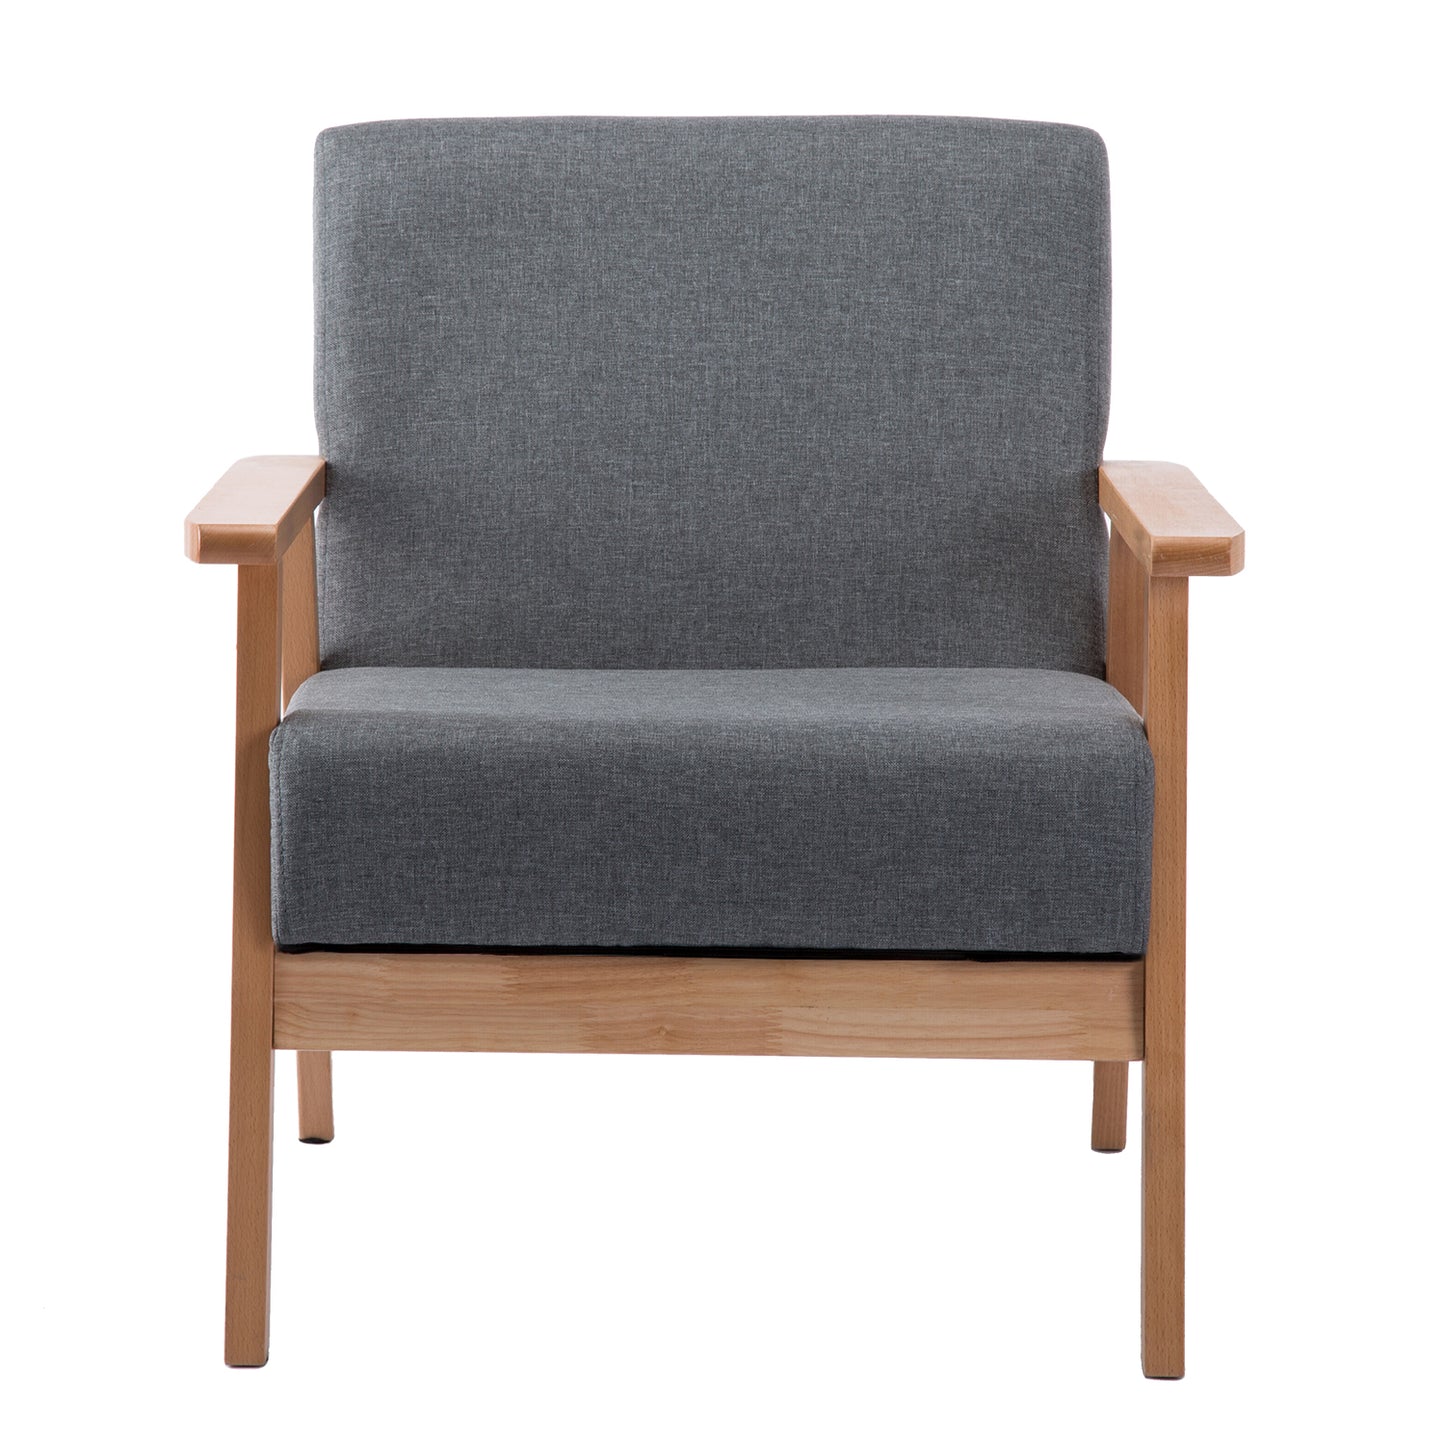 DEW Upholstered Sofa Set of 2